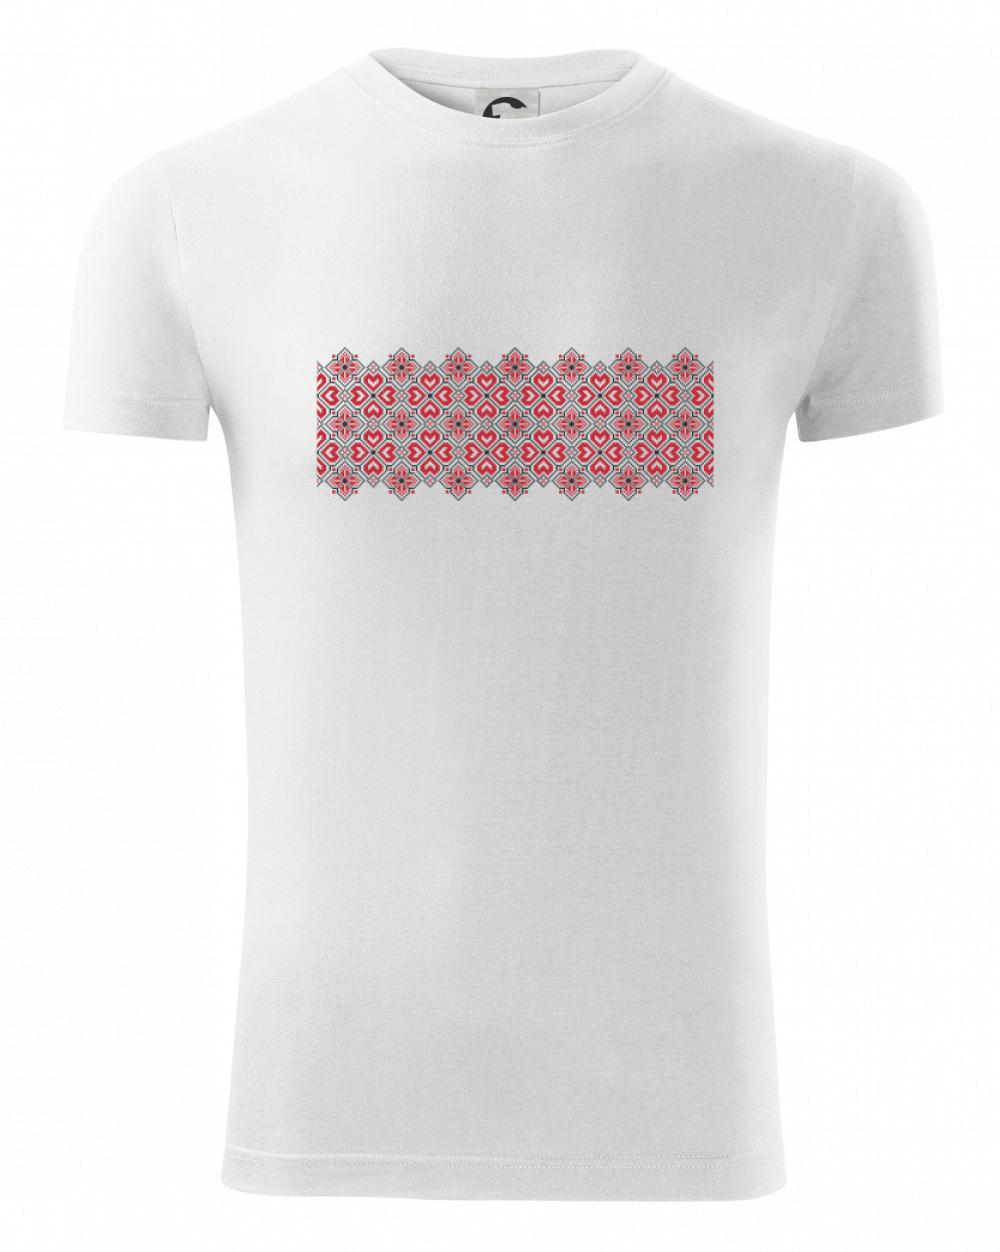 Lotyšsko ornament - Viper FIT pánske tričko